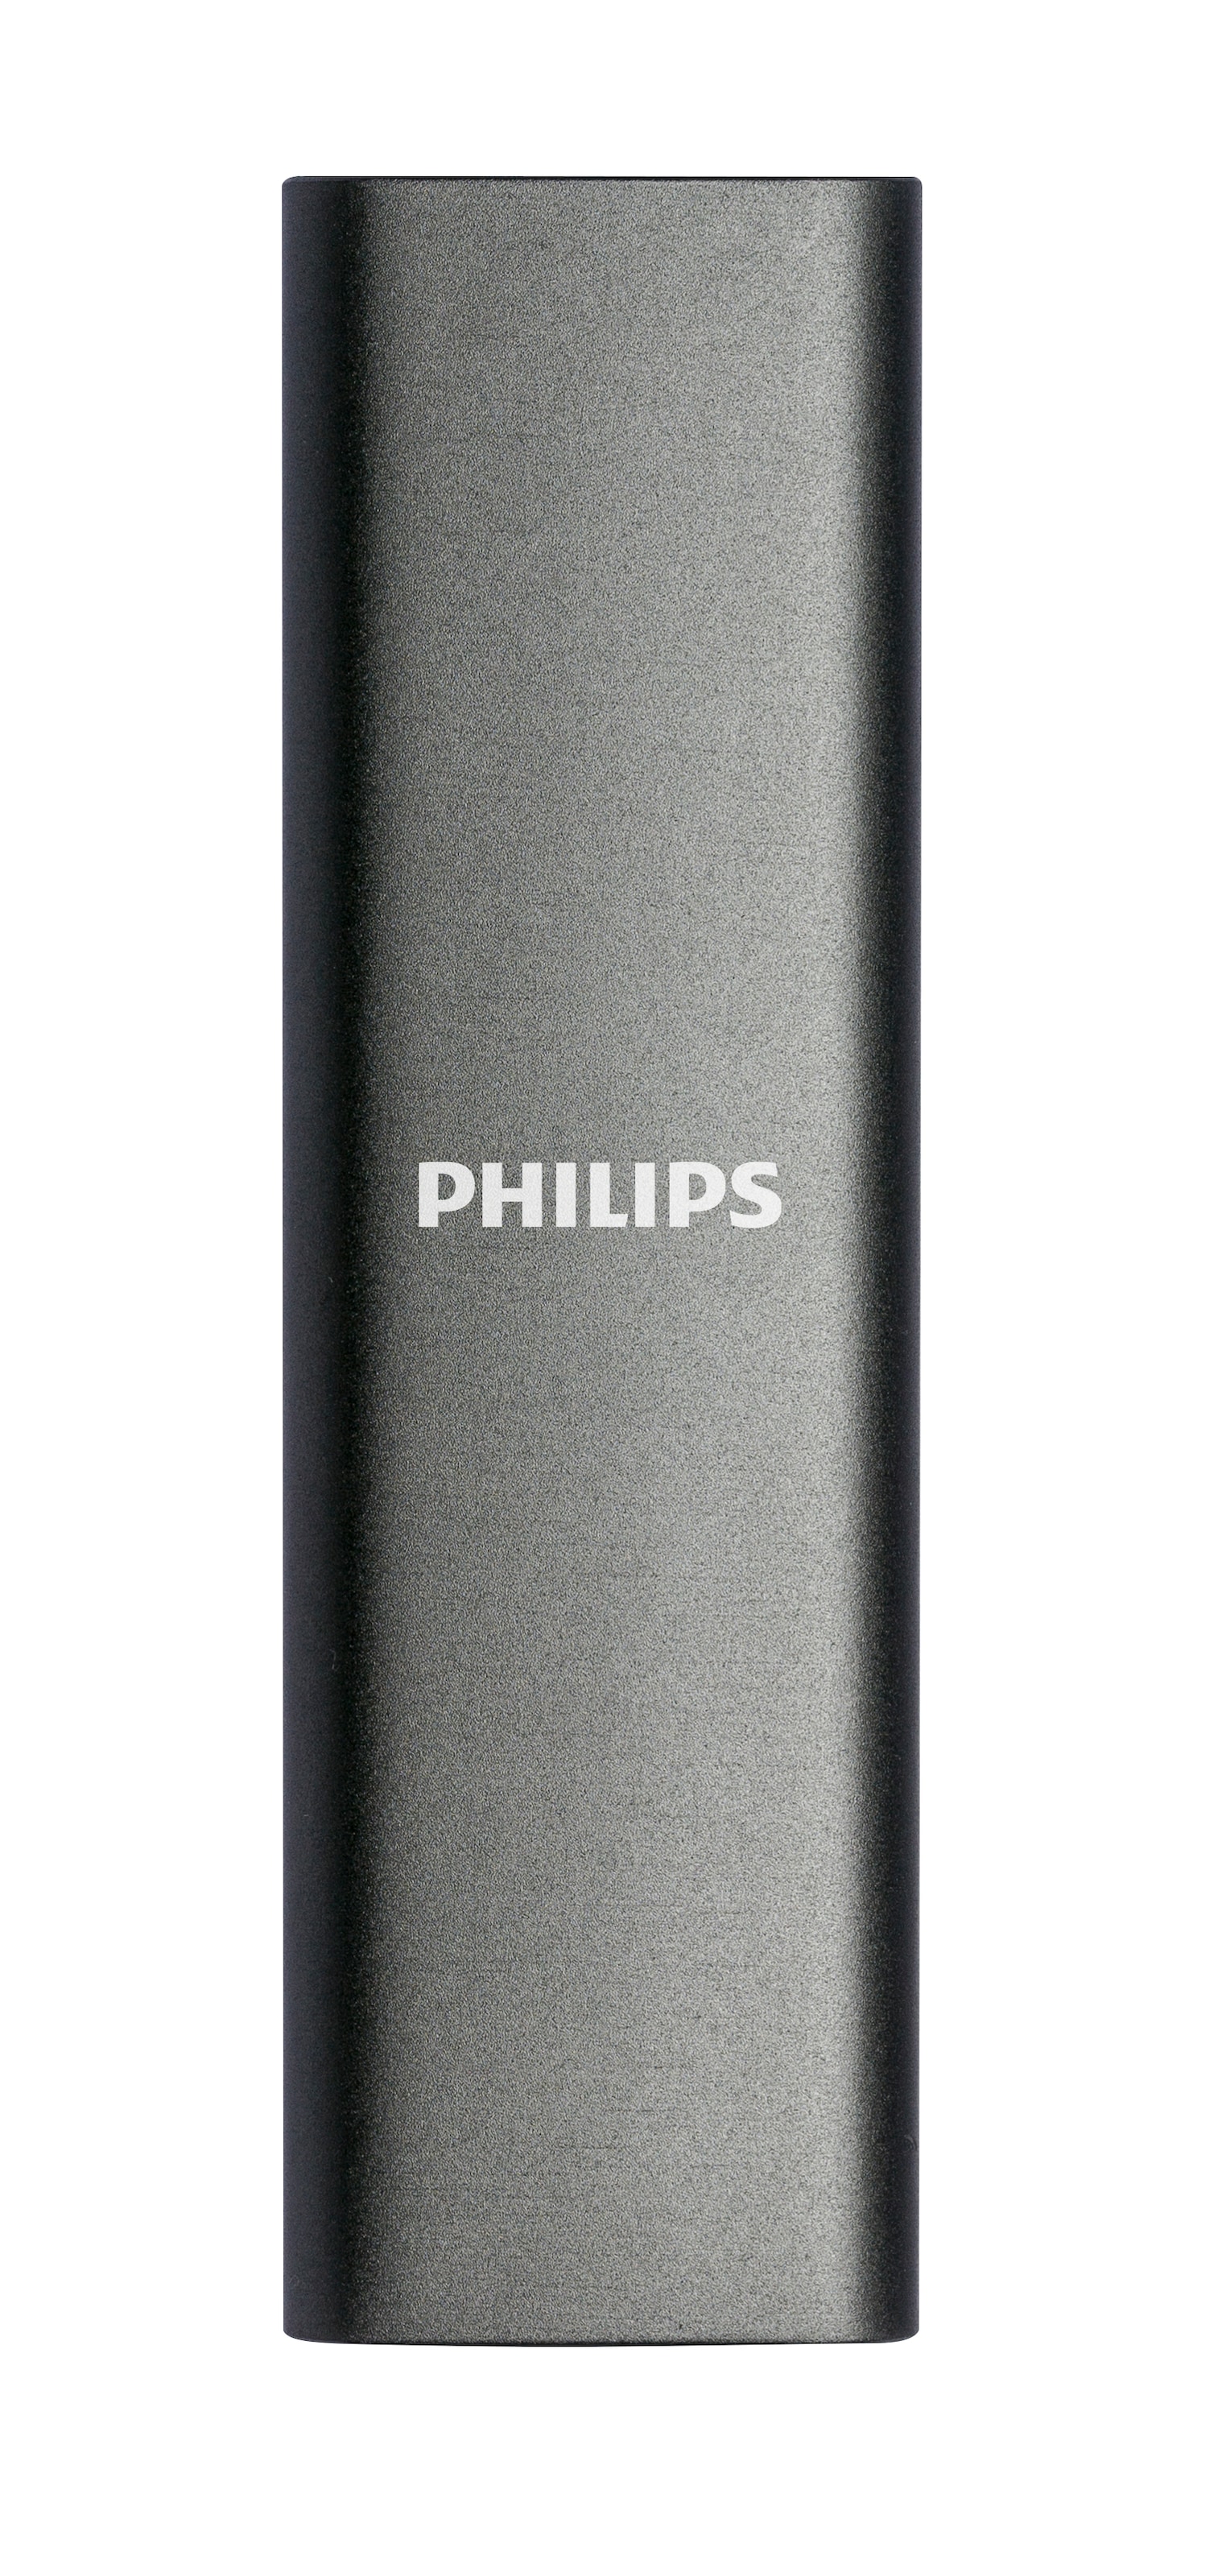 Philips externe SSD »External SSD 500GB«, Anschluss USB-C, Ultra Speed